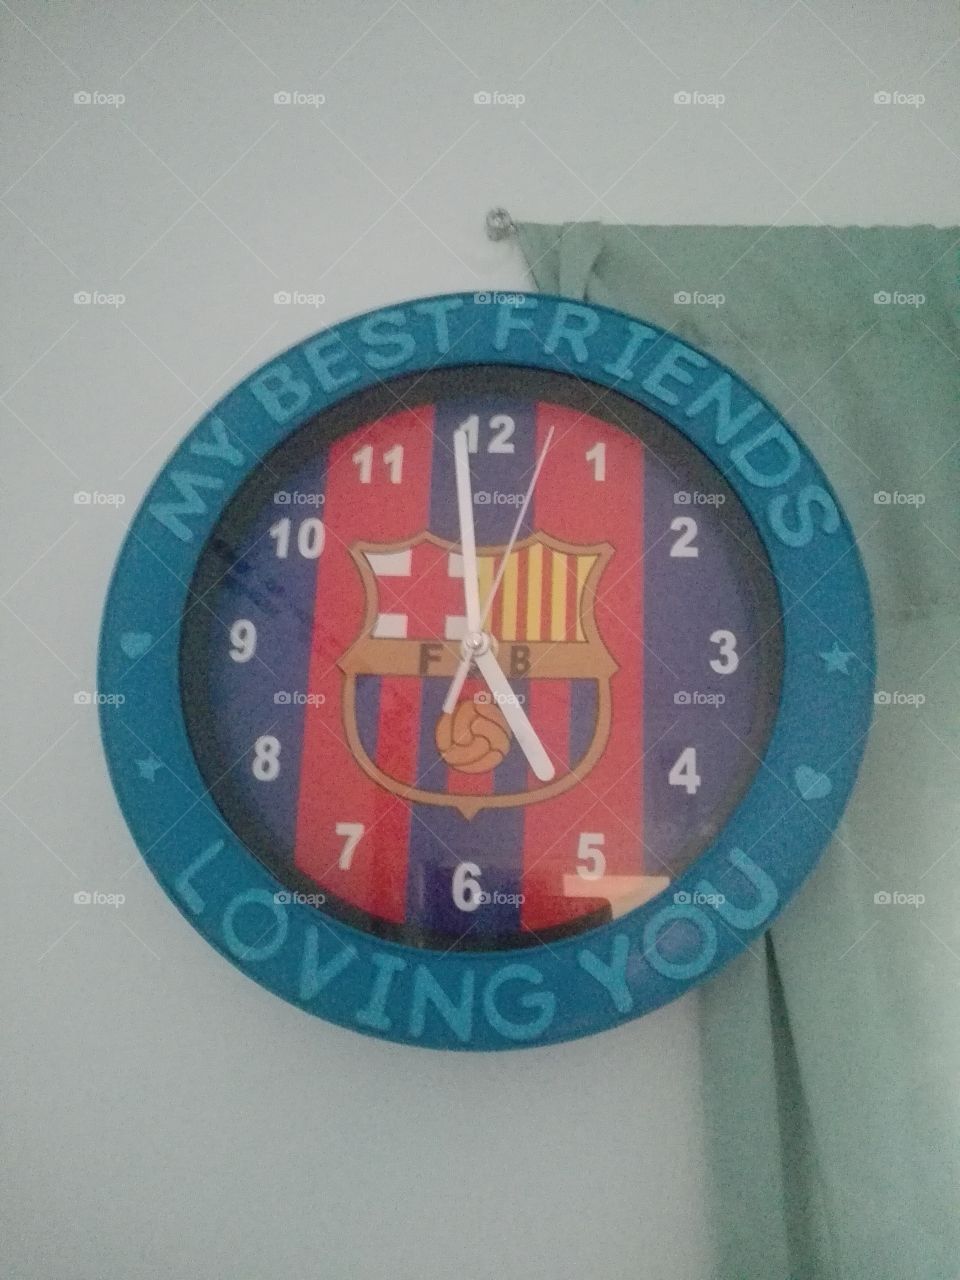 Cool FC Barcelona clock